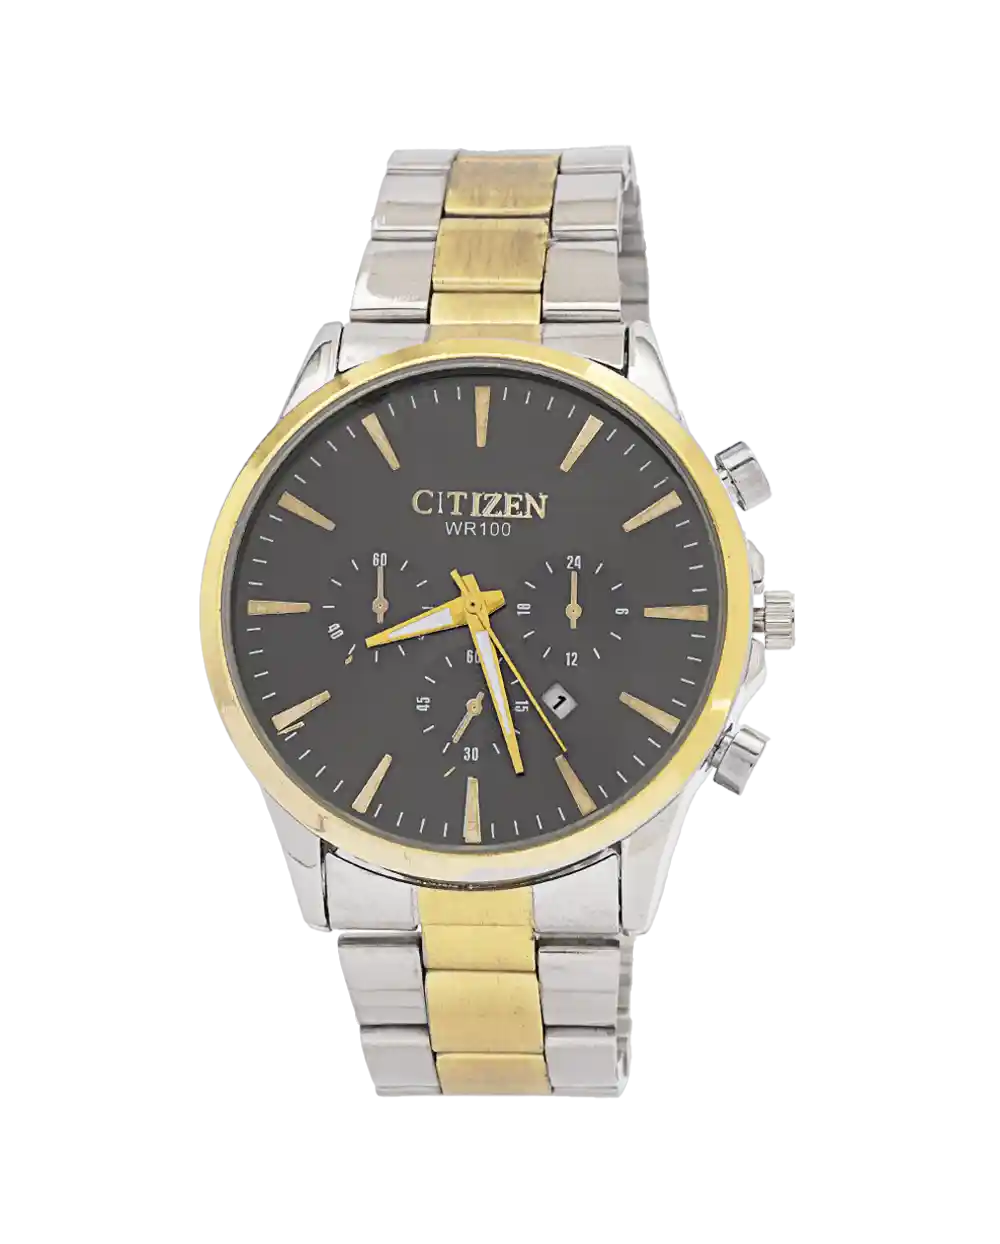 خرید ساعت مچی مردانه سیتیزن CITIZEN مدل 1990 بند استیل نقره ای طلایی و رنگ ثابت با صفحه مشکی بهترین قیمت به همراه ارسال رایگان و جعبه